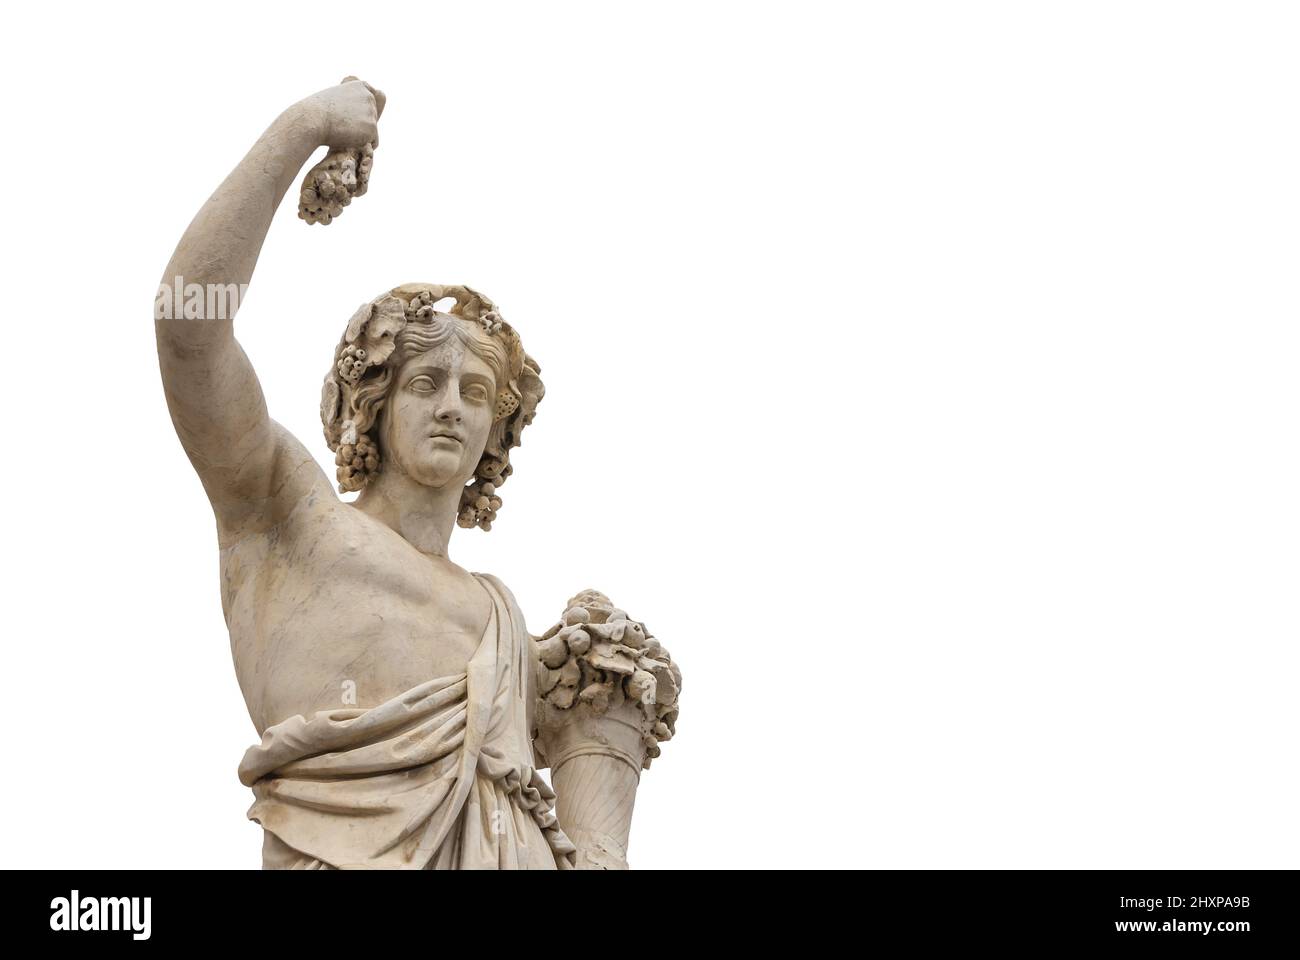 Paganesimo in tempi antichi. dio romano o greco Bacco con uva, una statua marmorea neoclassica, eretta nel 19th secolo nel centro storico di Roma Foto Stock